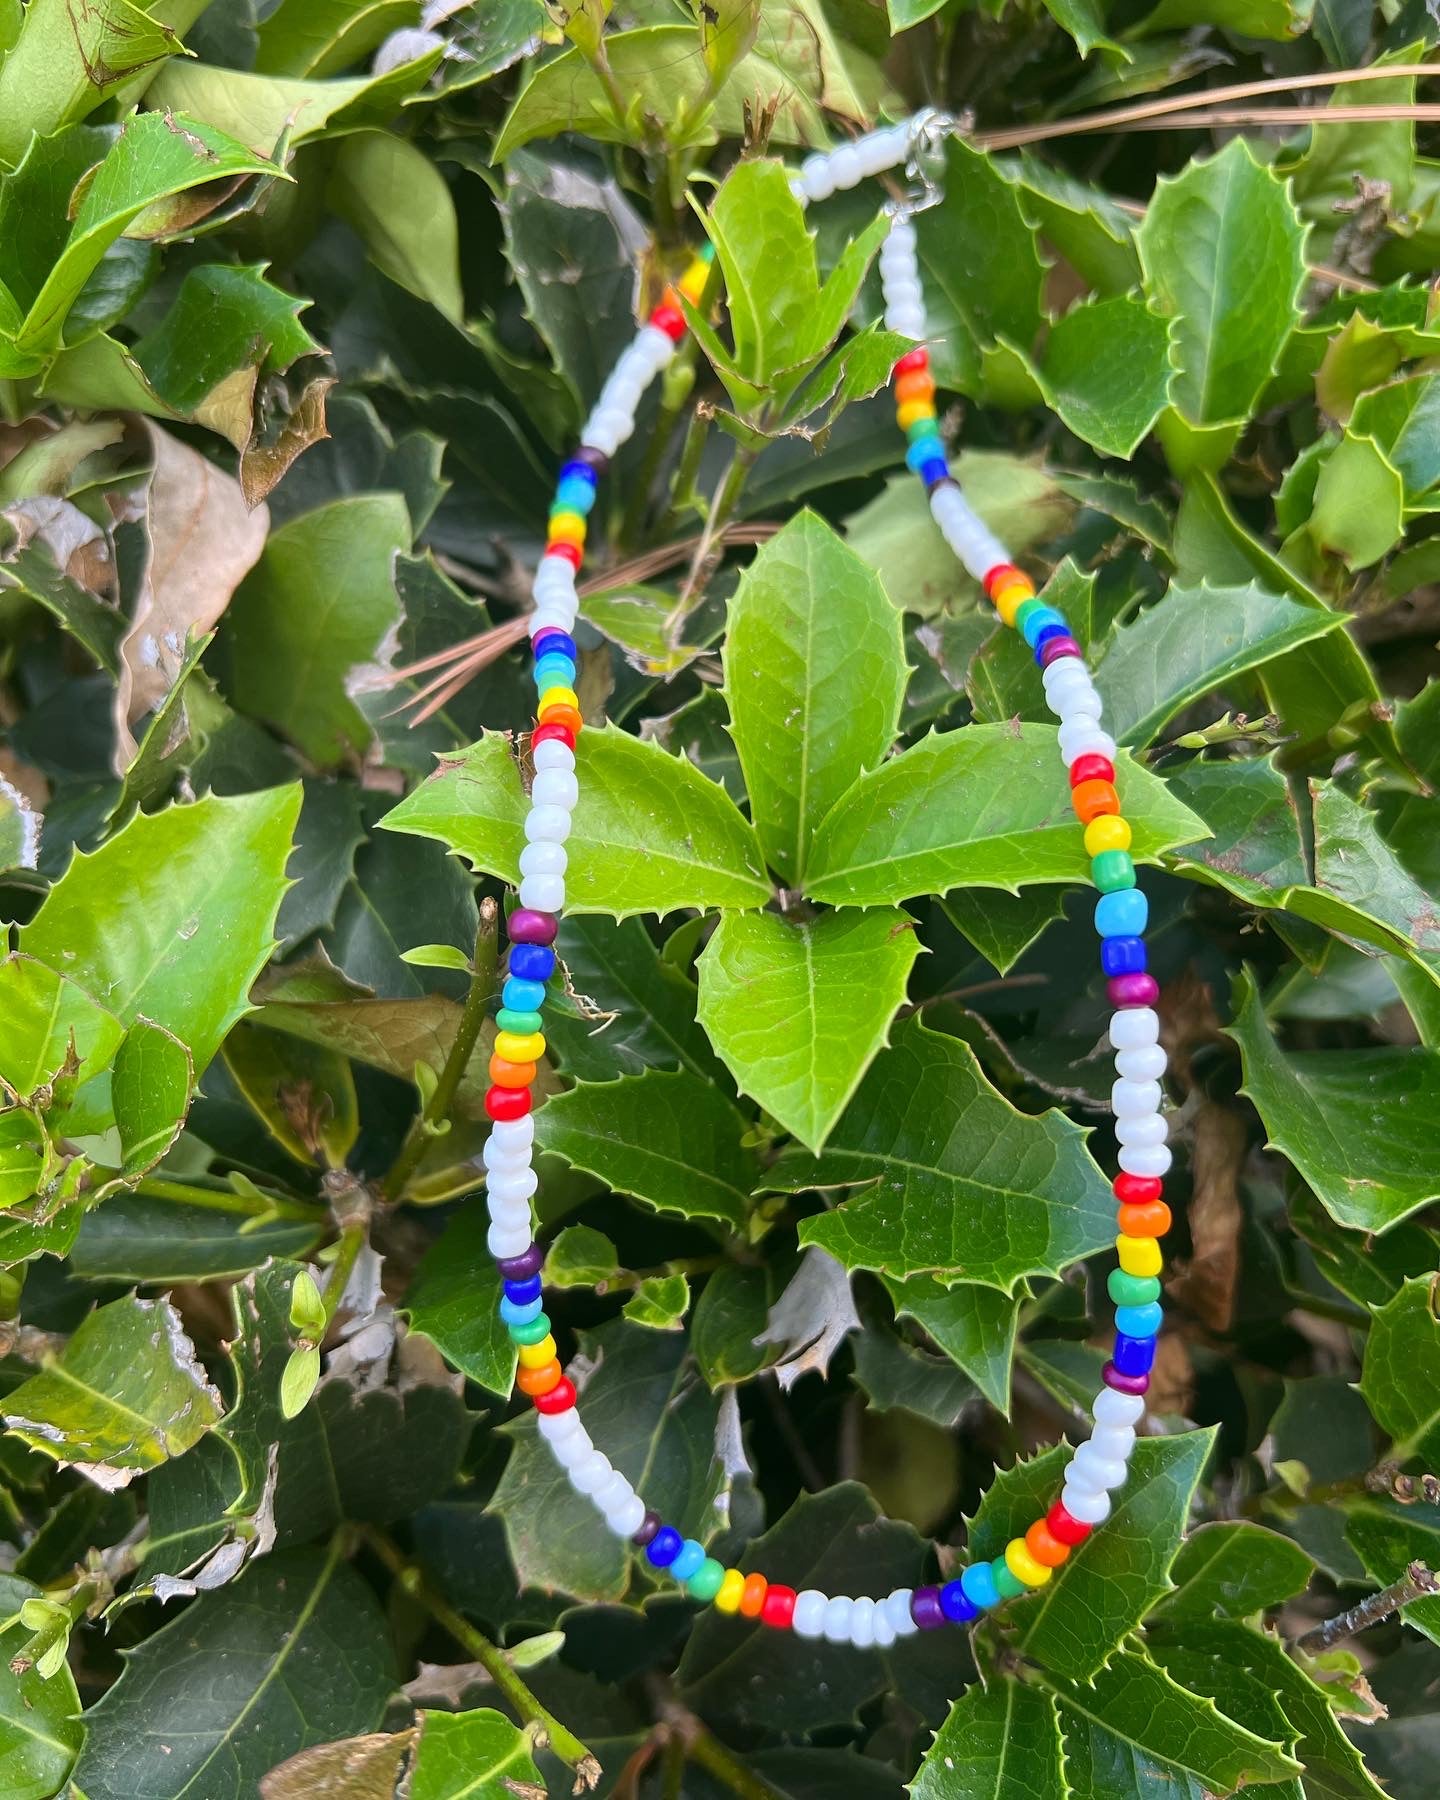 Pride Necklace